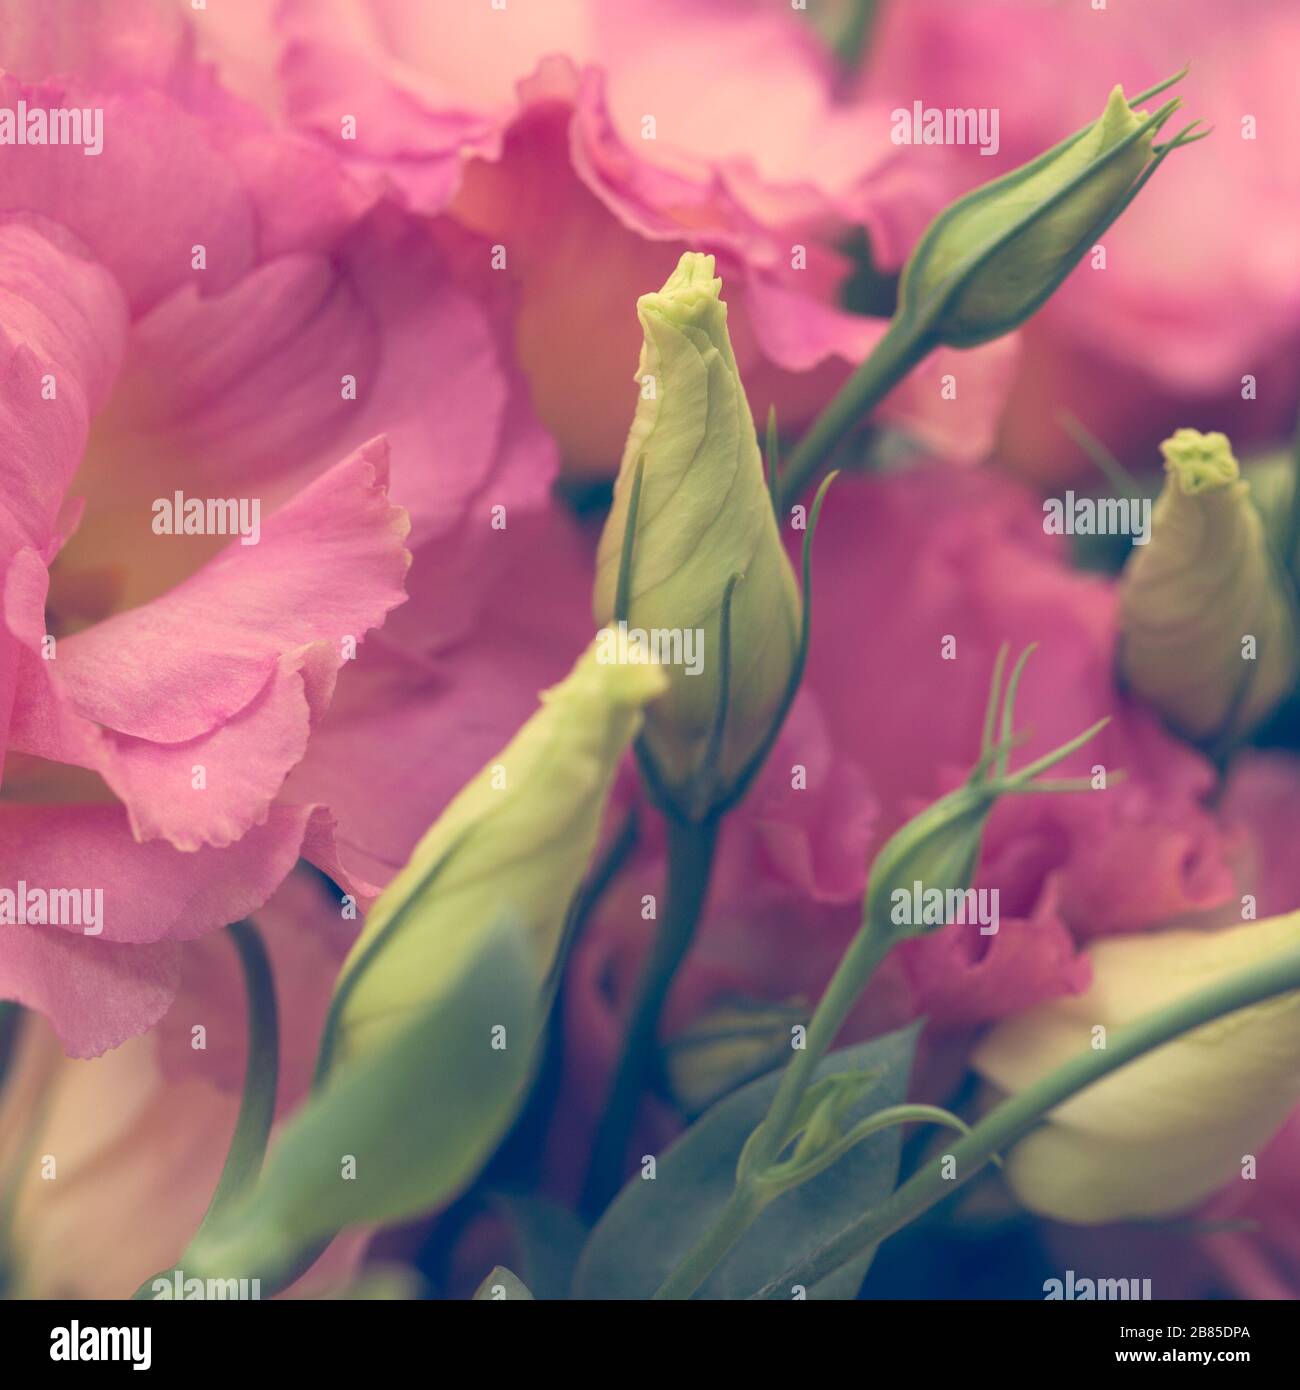 Rosa schöne Eustoma-Blumen (Lisianthus, Tulpengentian, Eustomas) Hintergrund. Vintage-Stil. Stockfoto